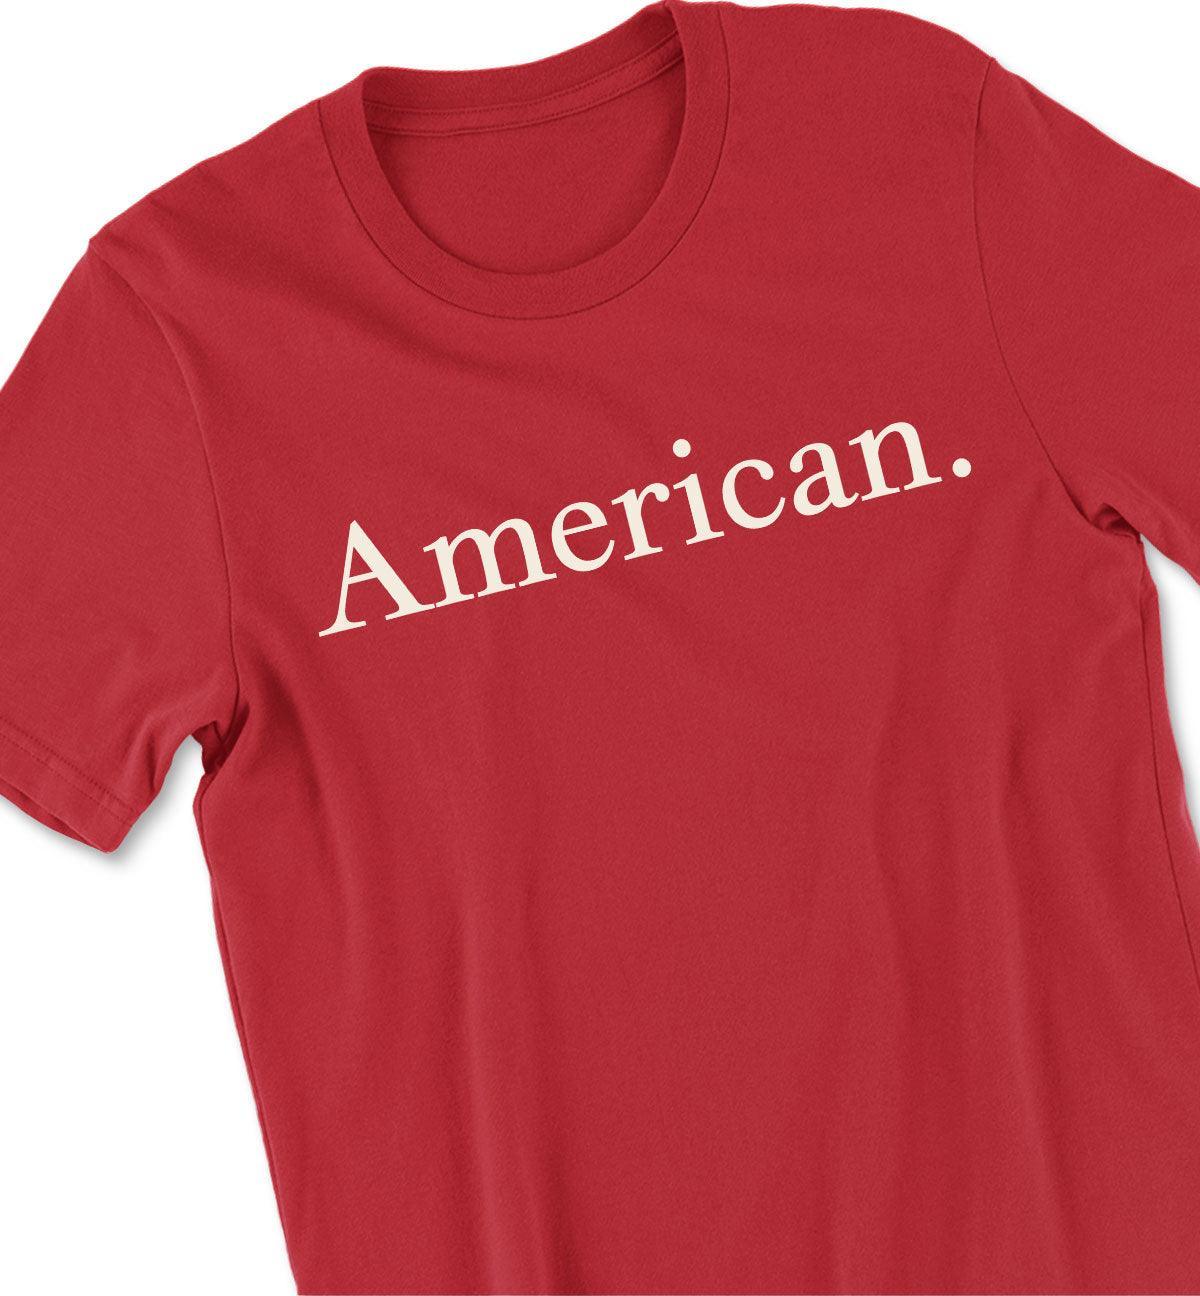 American. Period. Tshirt - NOGGINHED